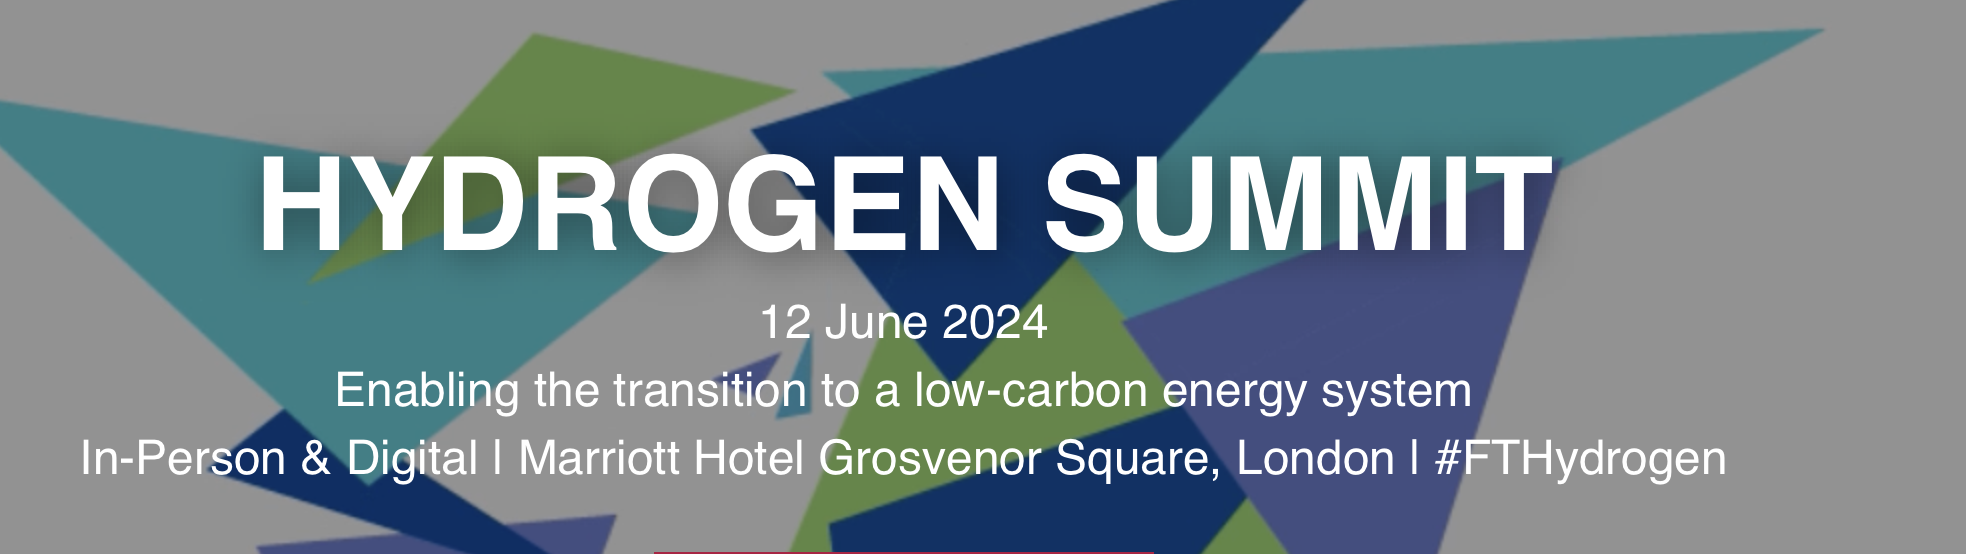 Hydrogen Summit 2024